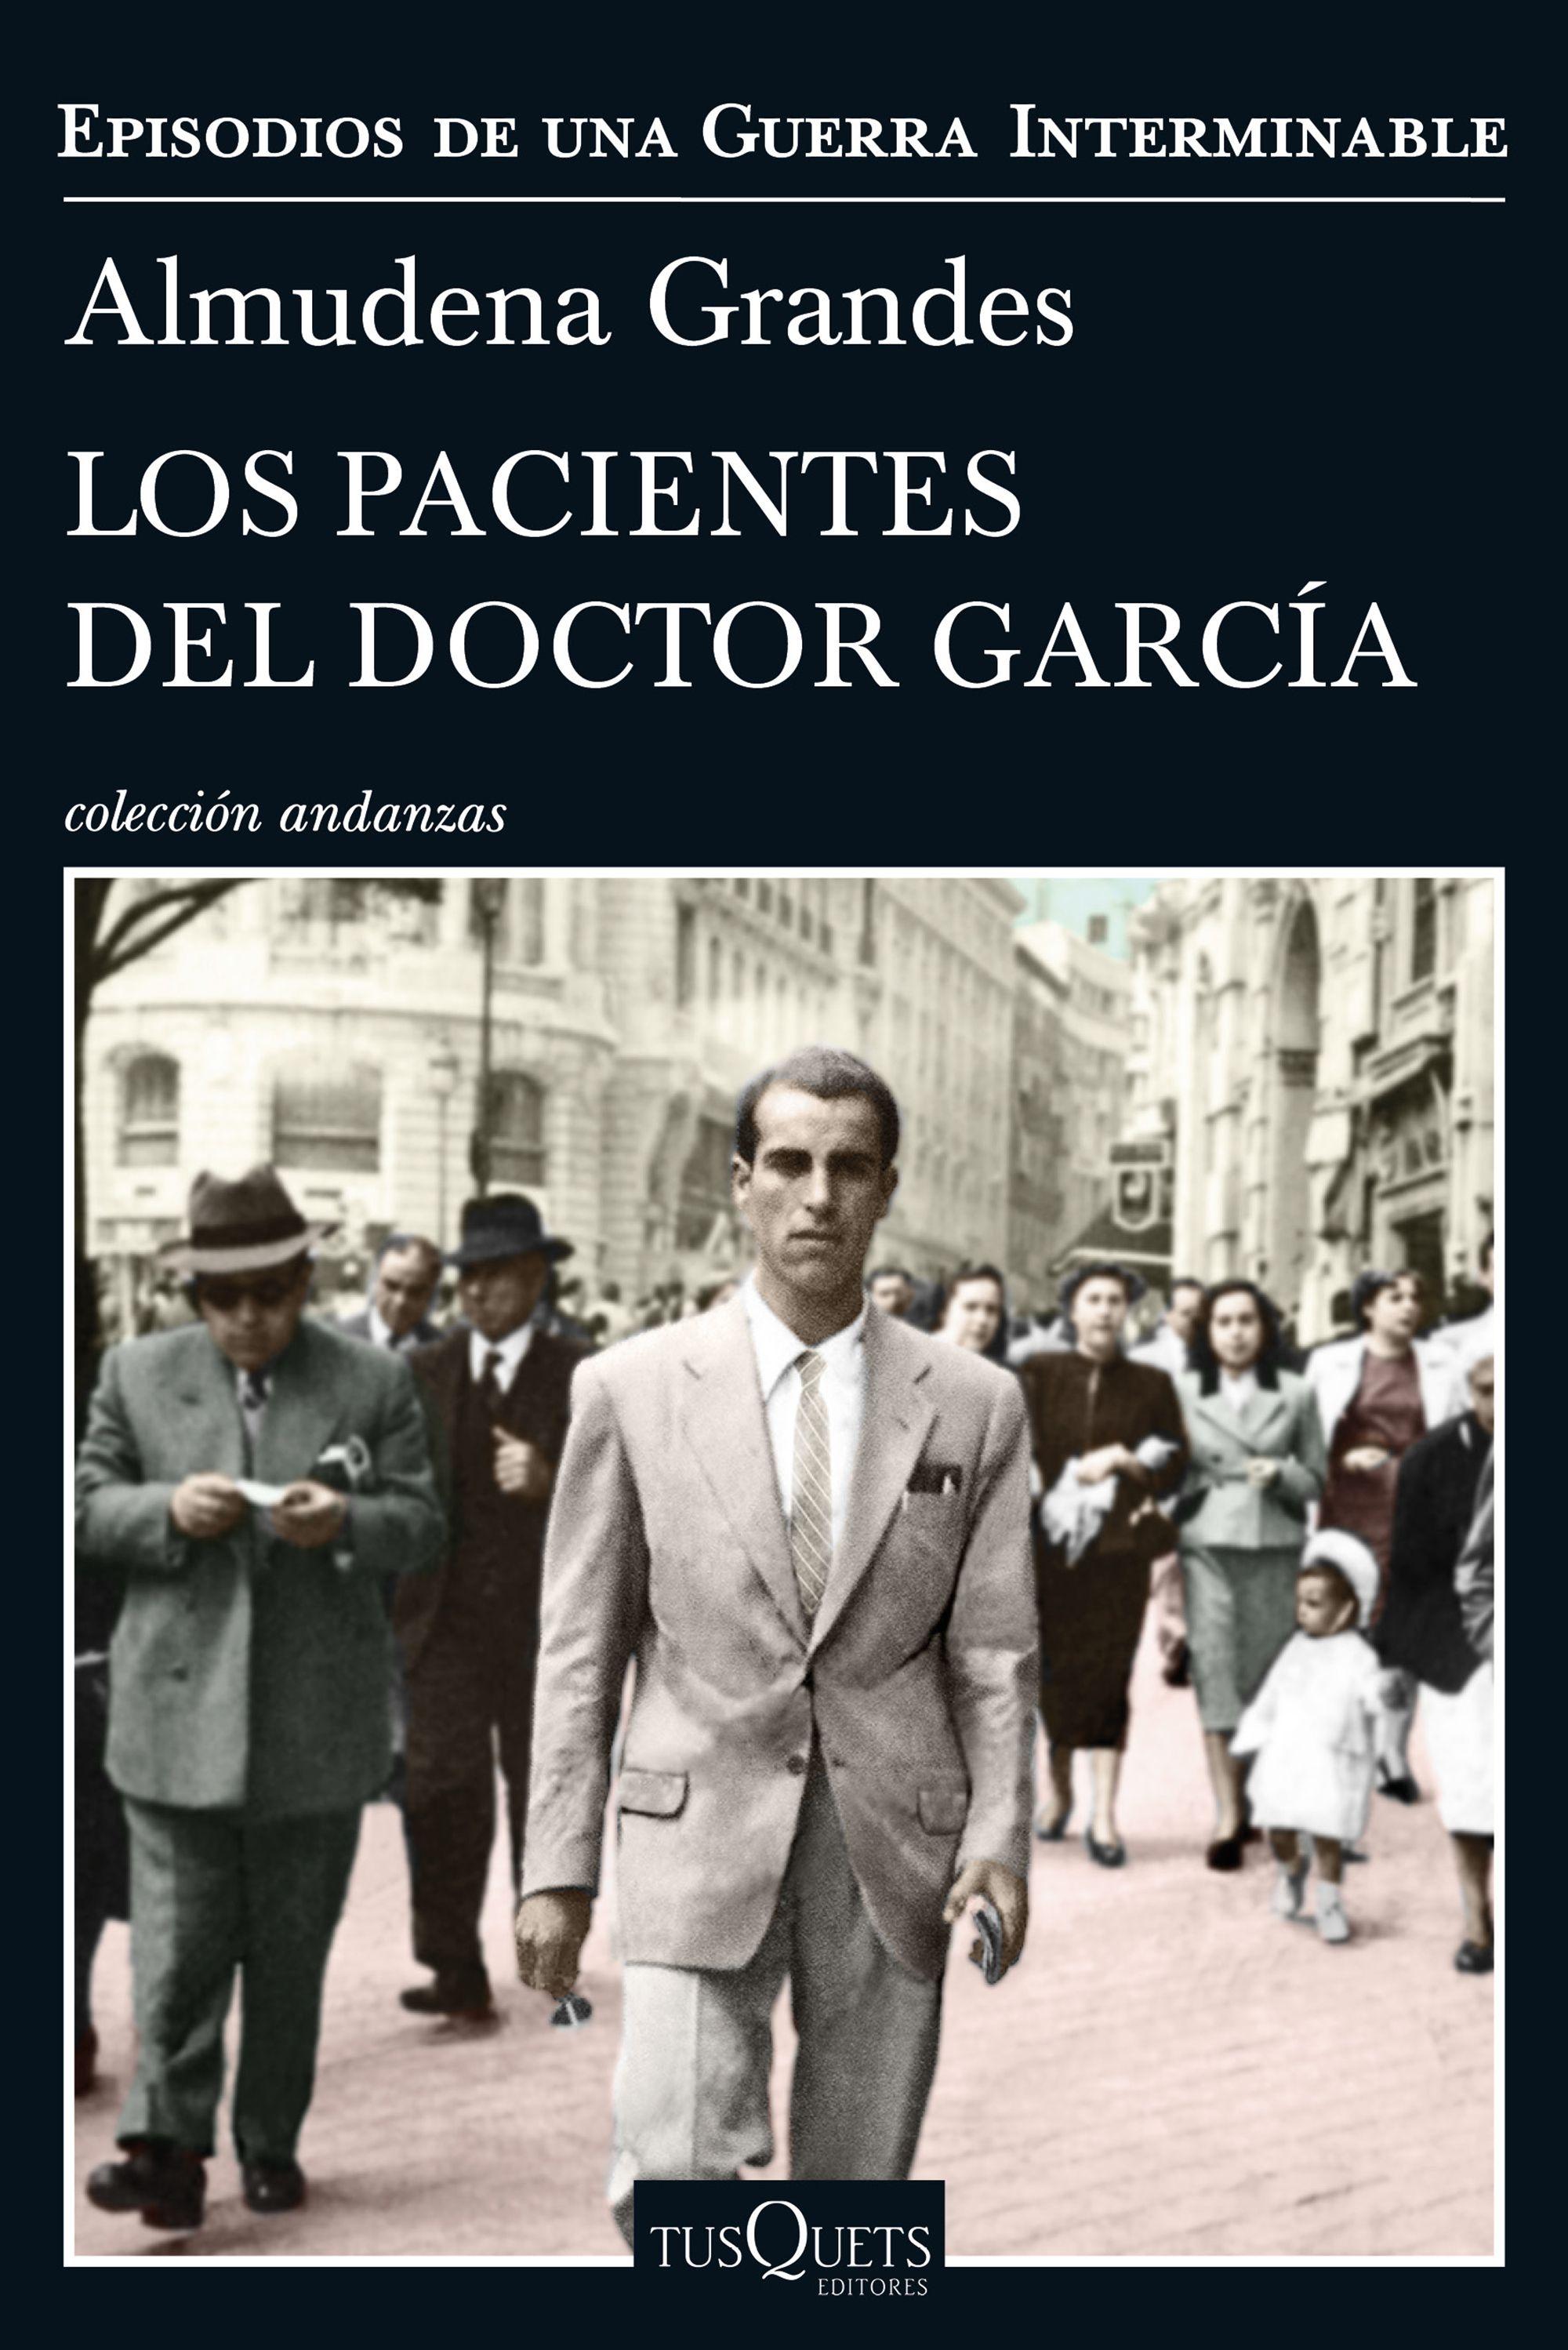 Pacientes del Doctor García, Los "Episodios de una guerra interminable 4"